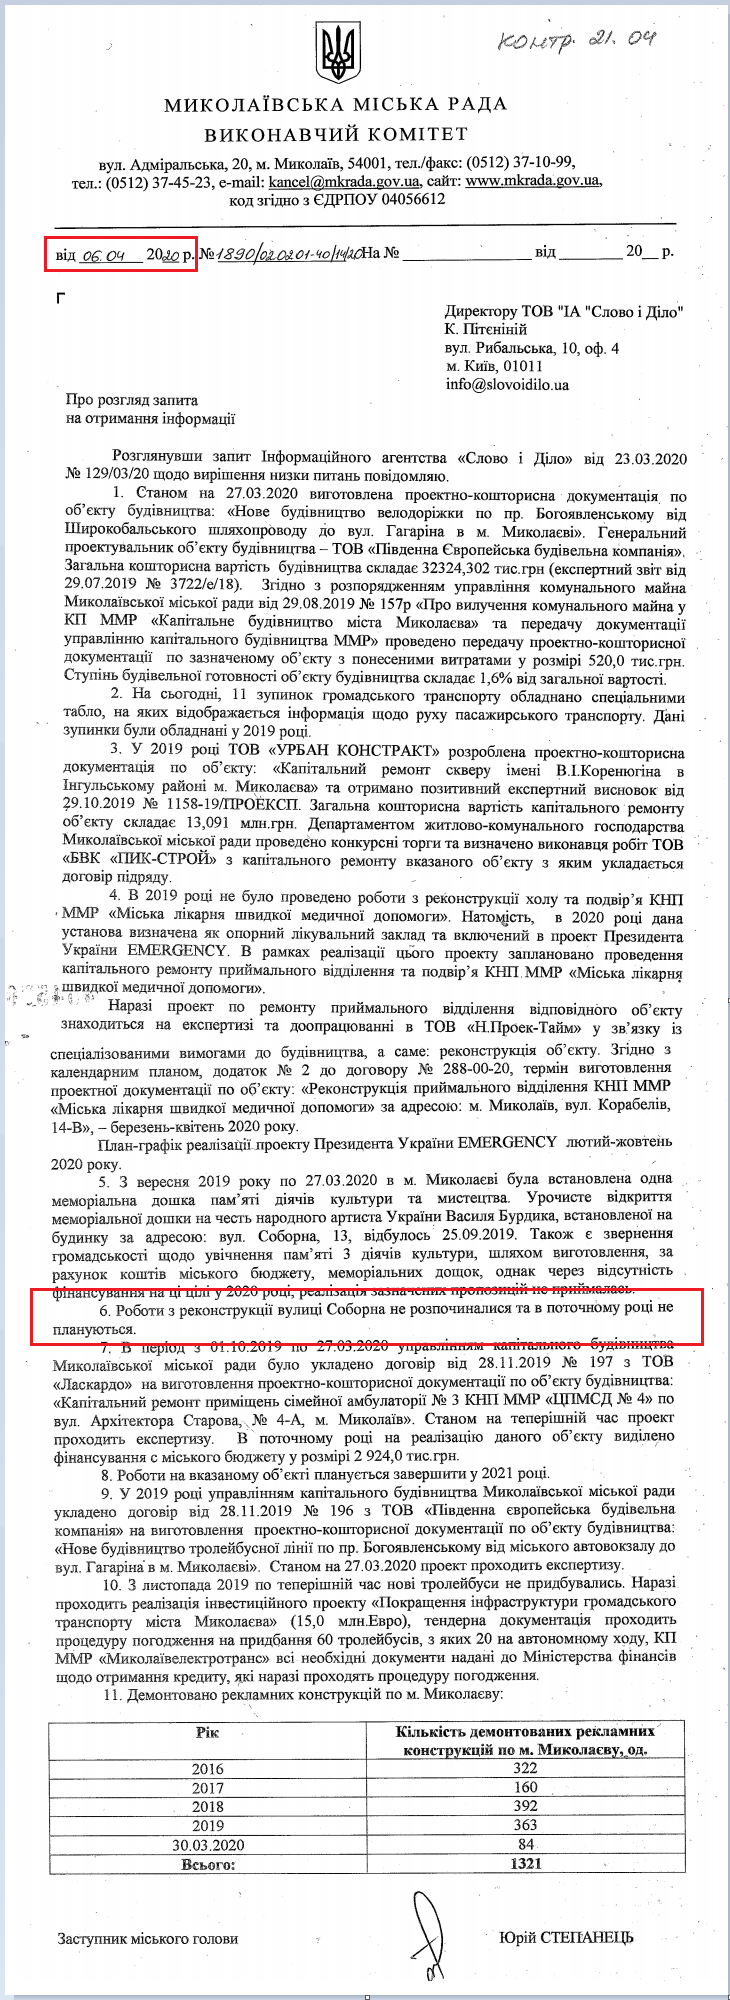 Лист Миколаївської МР від 4 квітня 2020 року